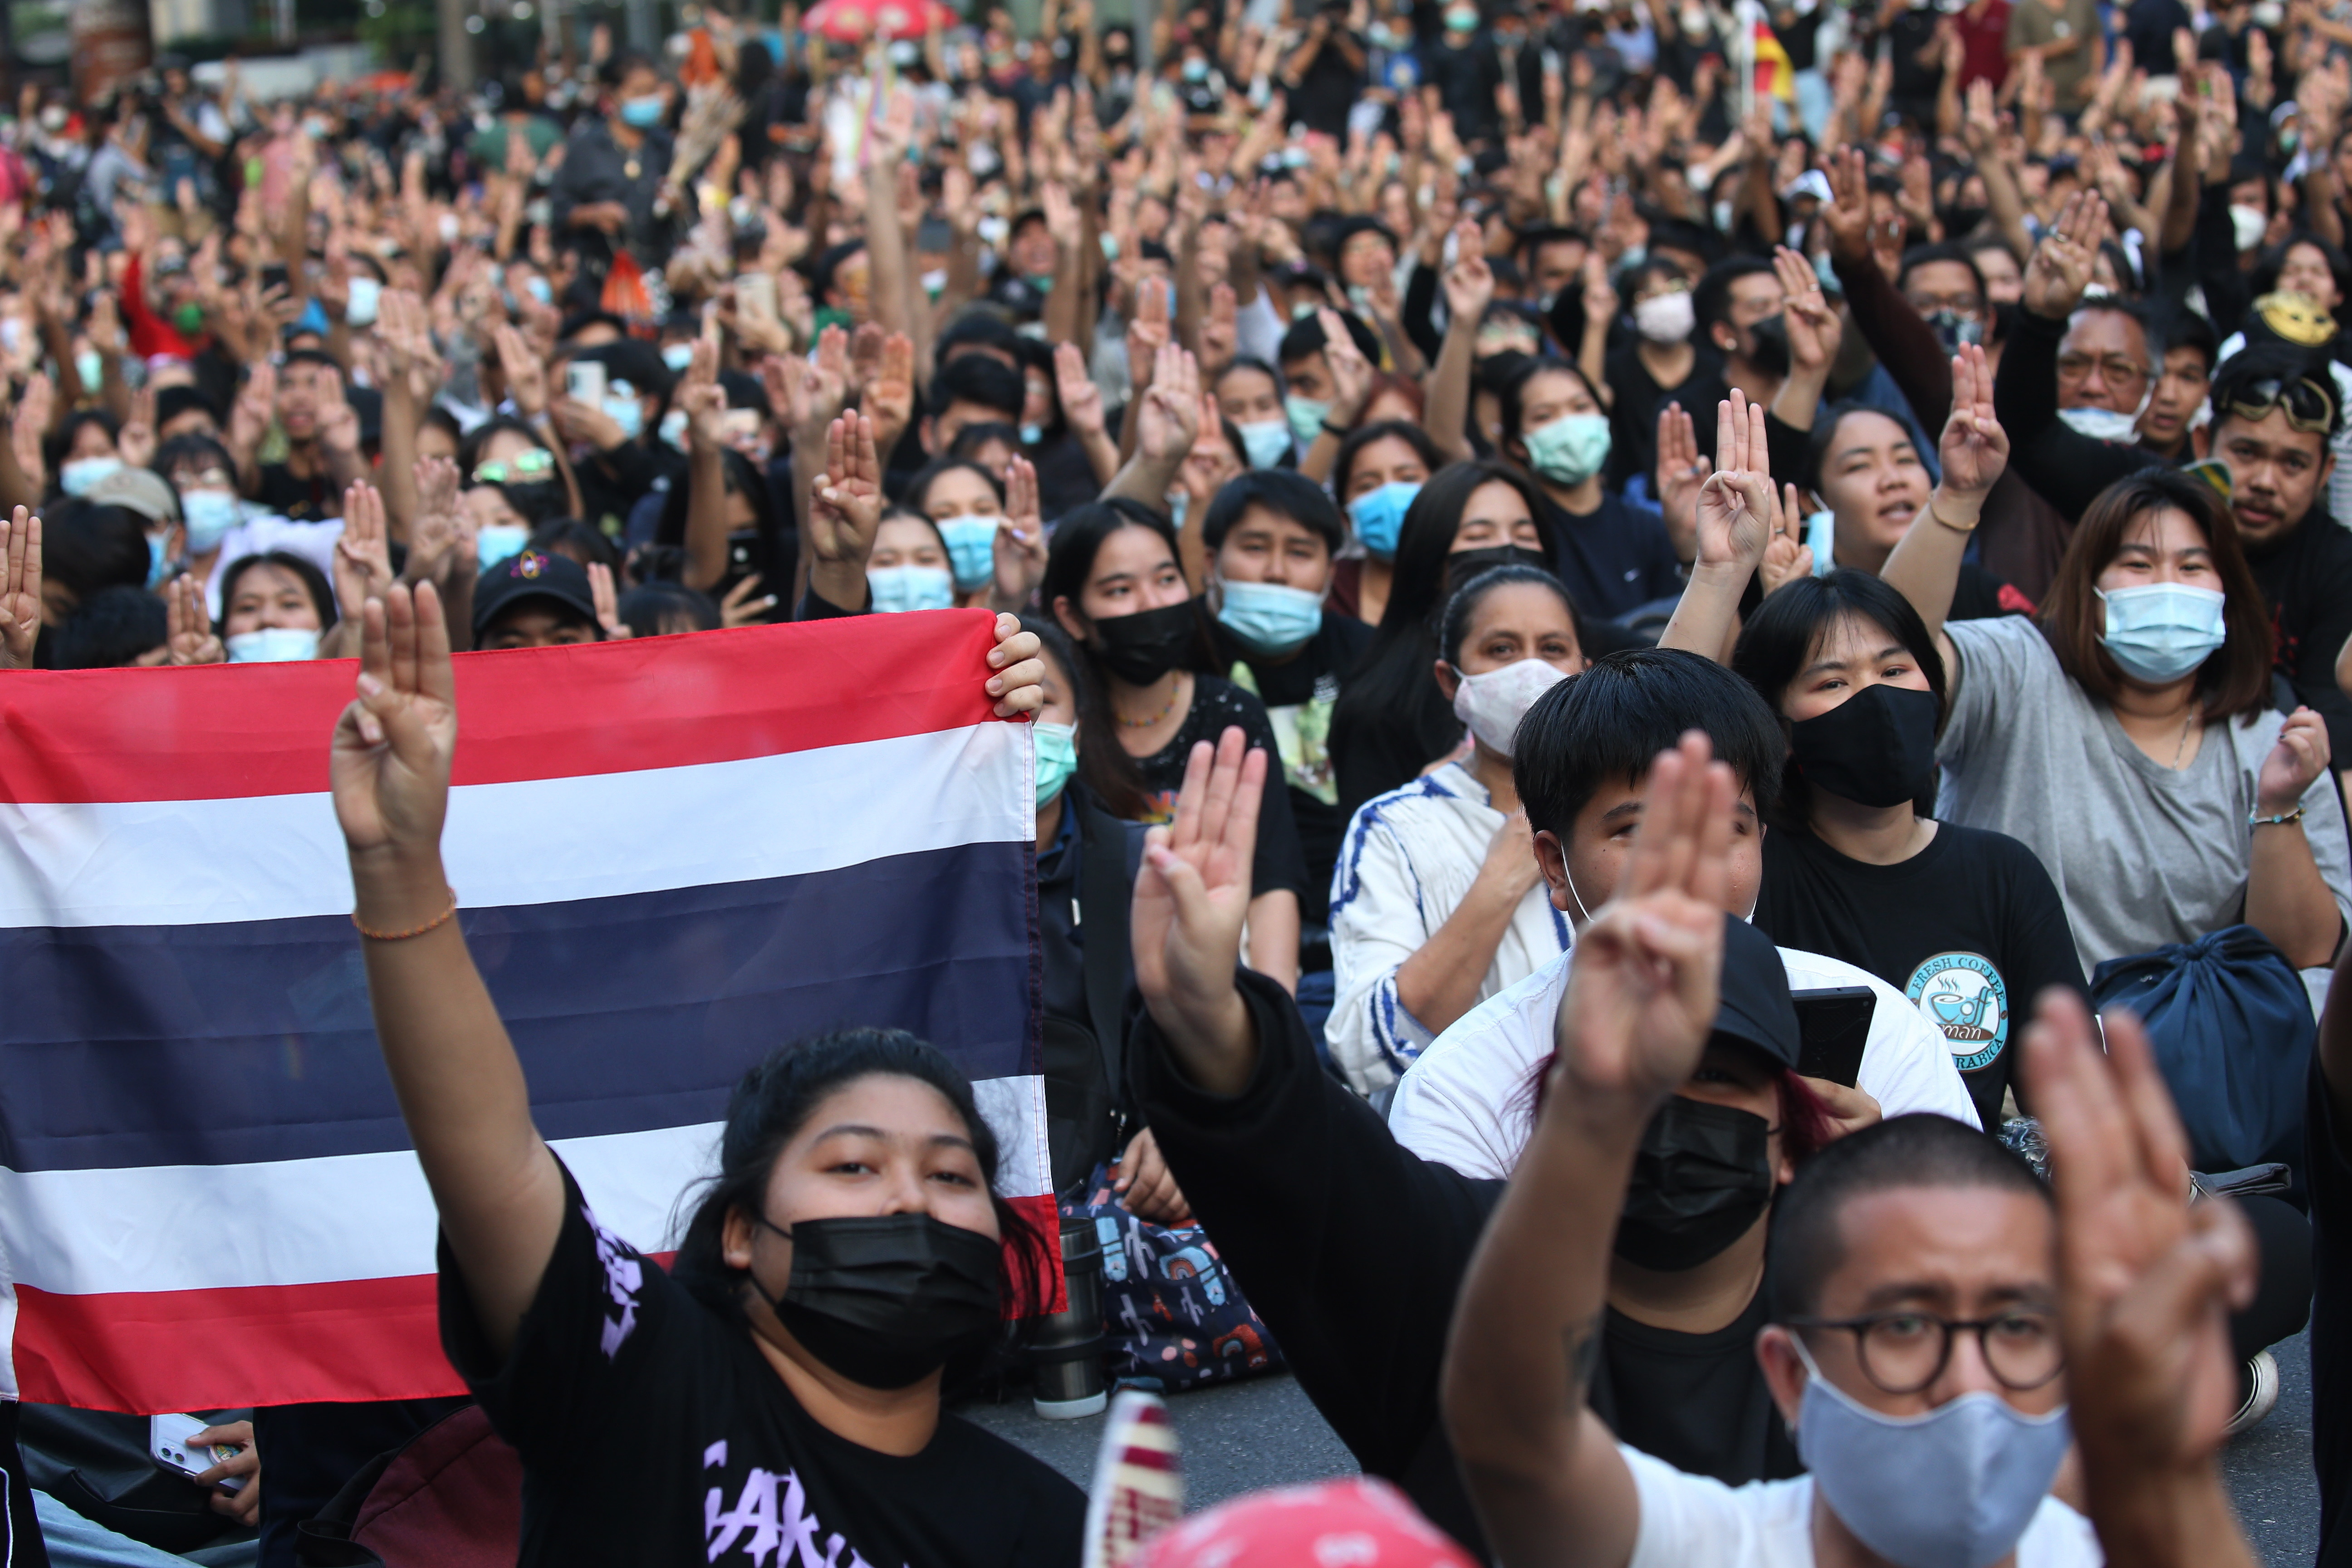 示威者高举三指手势。“三指礼”象征反抗威权独裁，以表达对民主支持。此手势被指源自电影《饥饿游戏》。